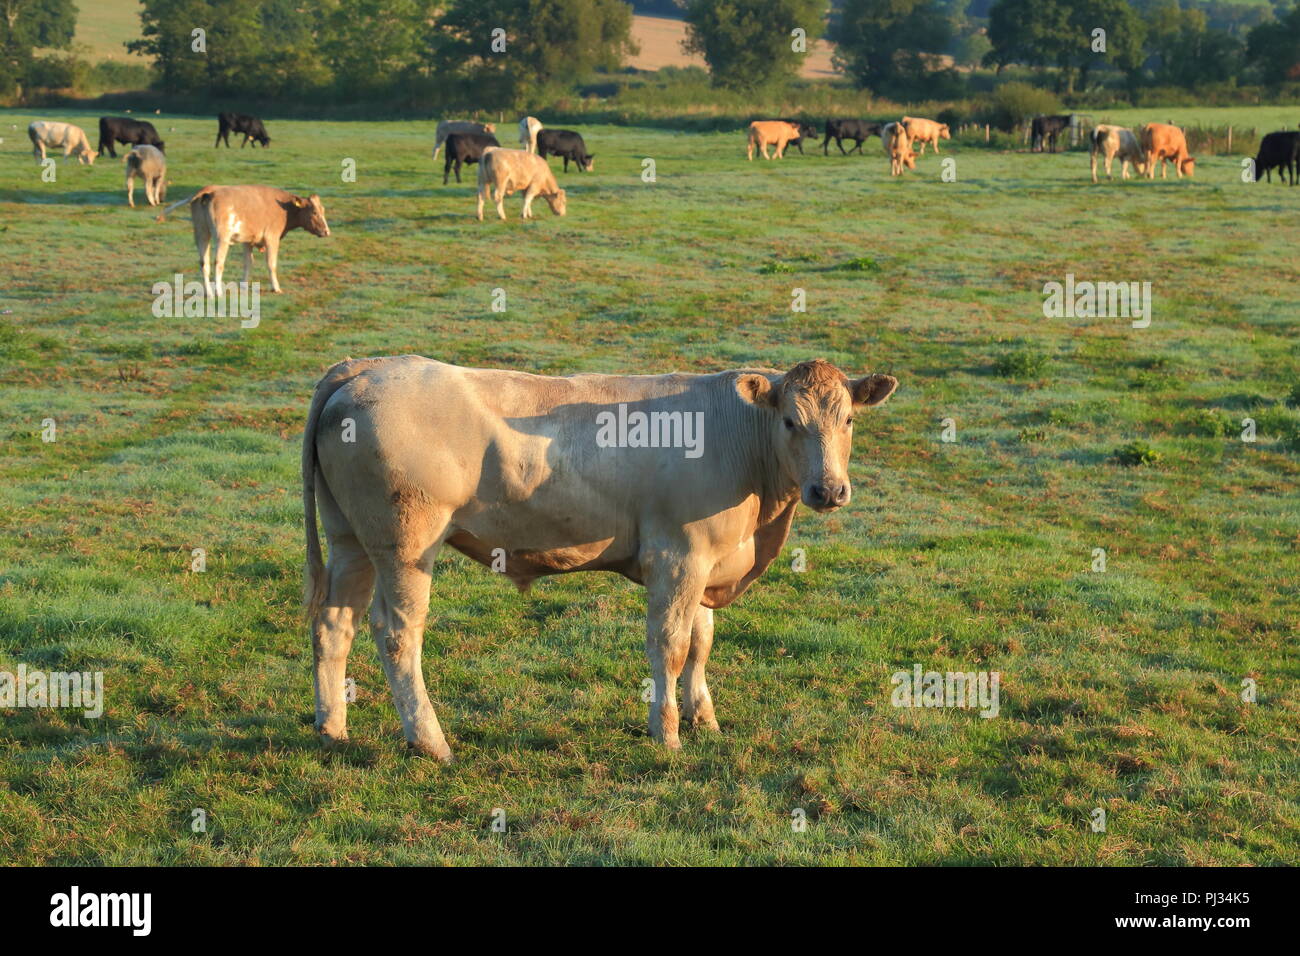 Mandria di mucche sul terreno coltivato nella valle di Ax, Devon Foto Stock